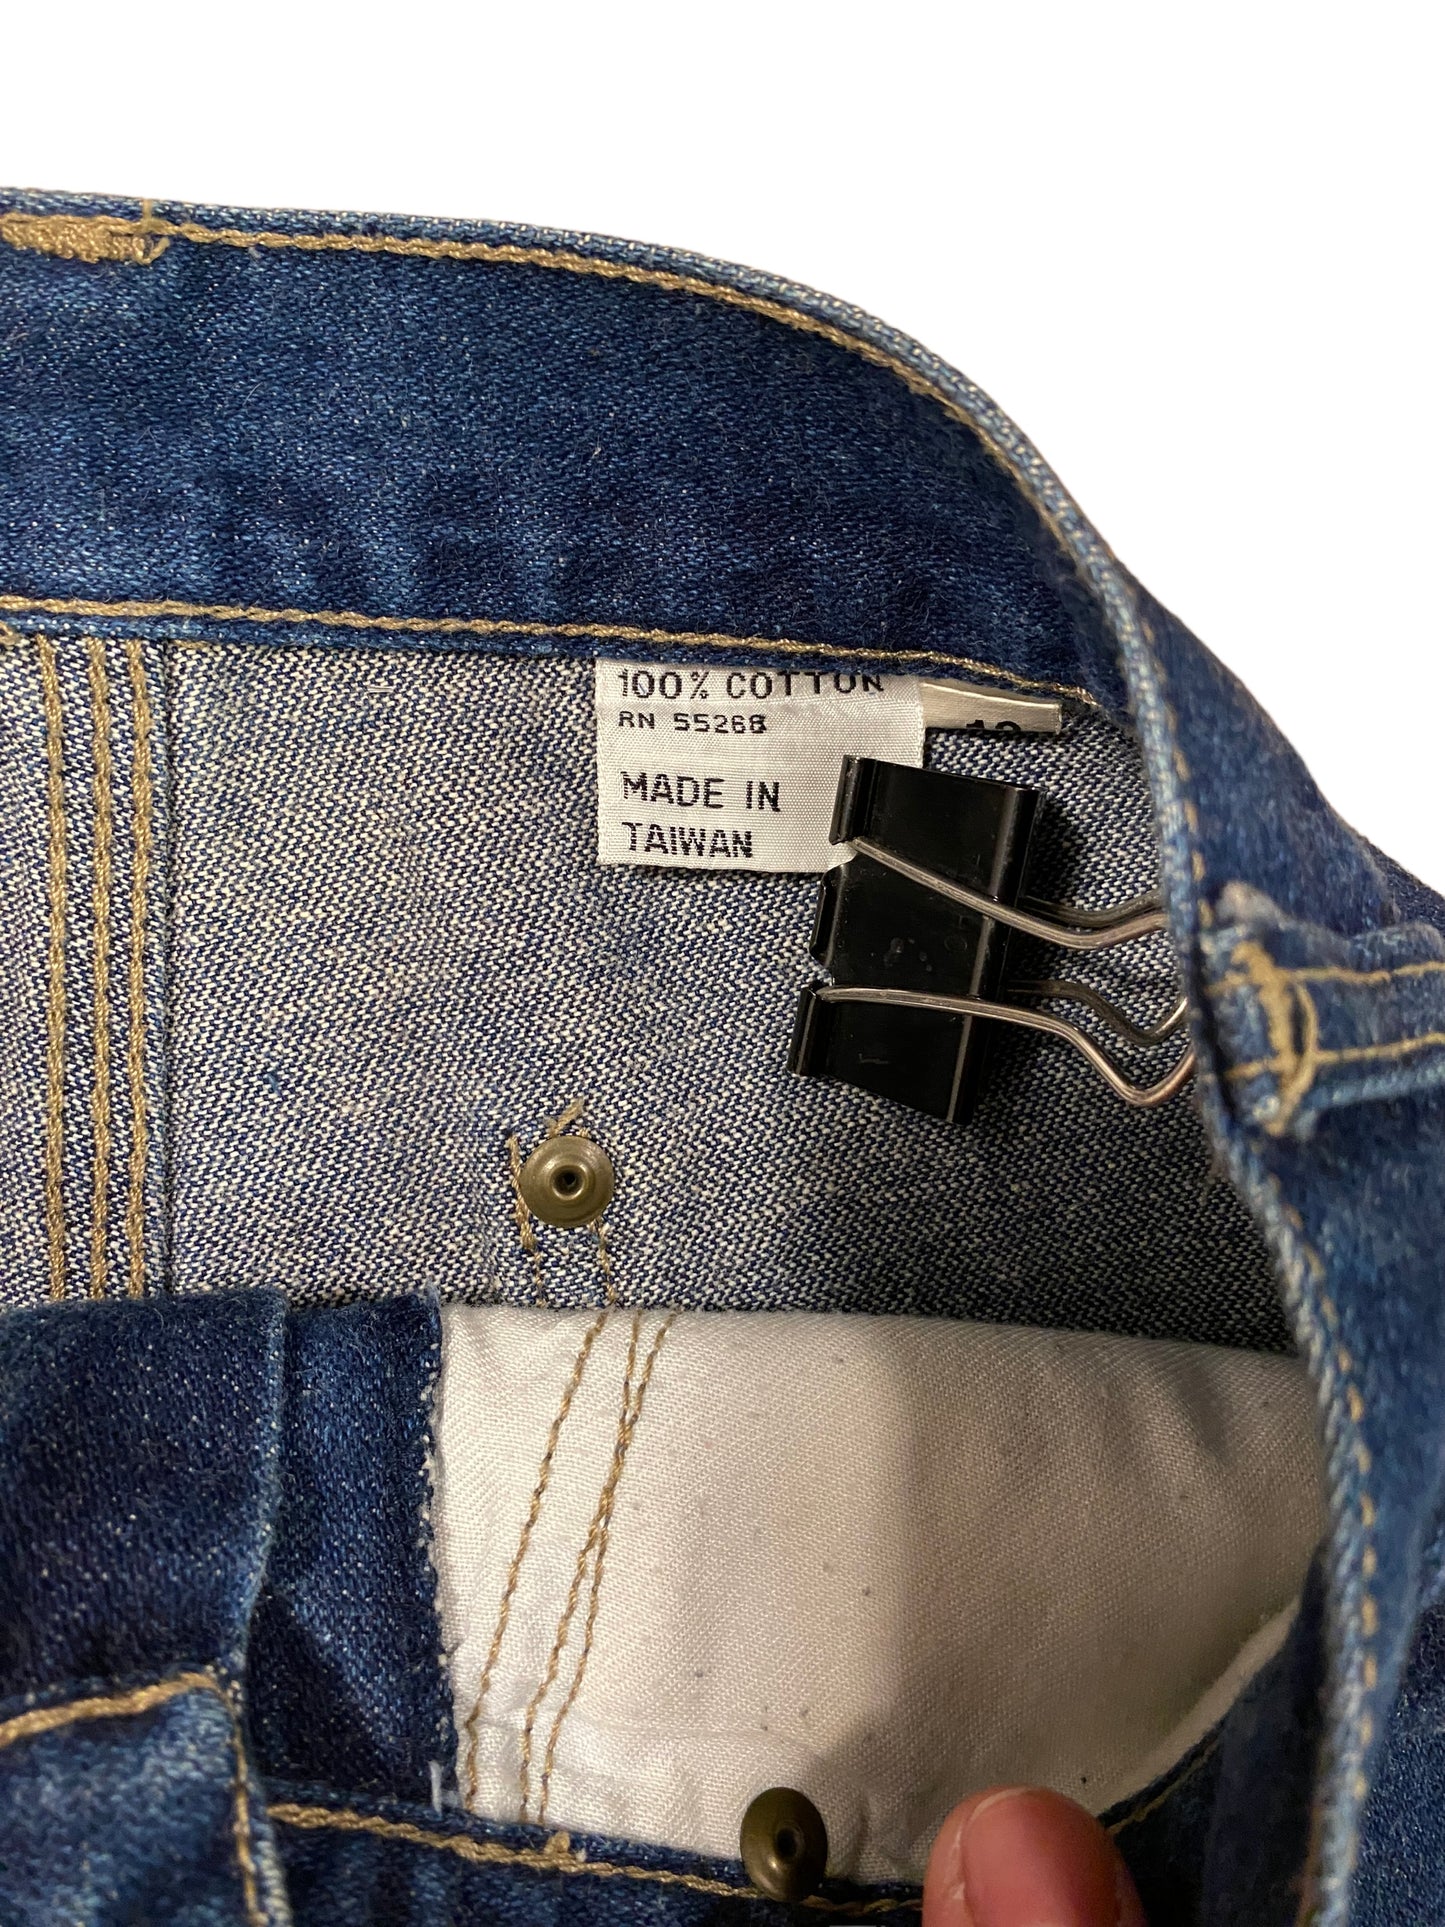 1980s Vintage Blaze Jeans High Waist Denim